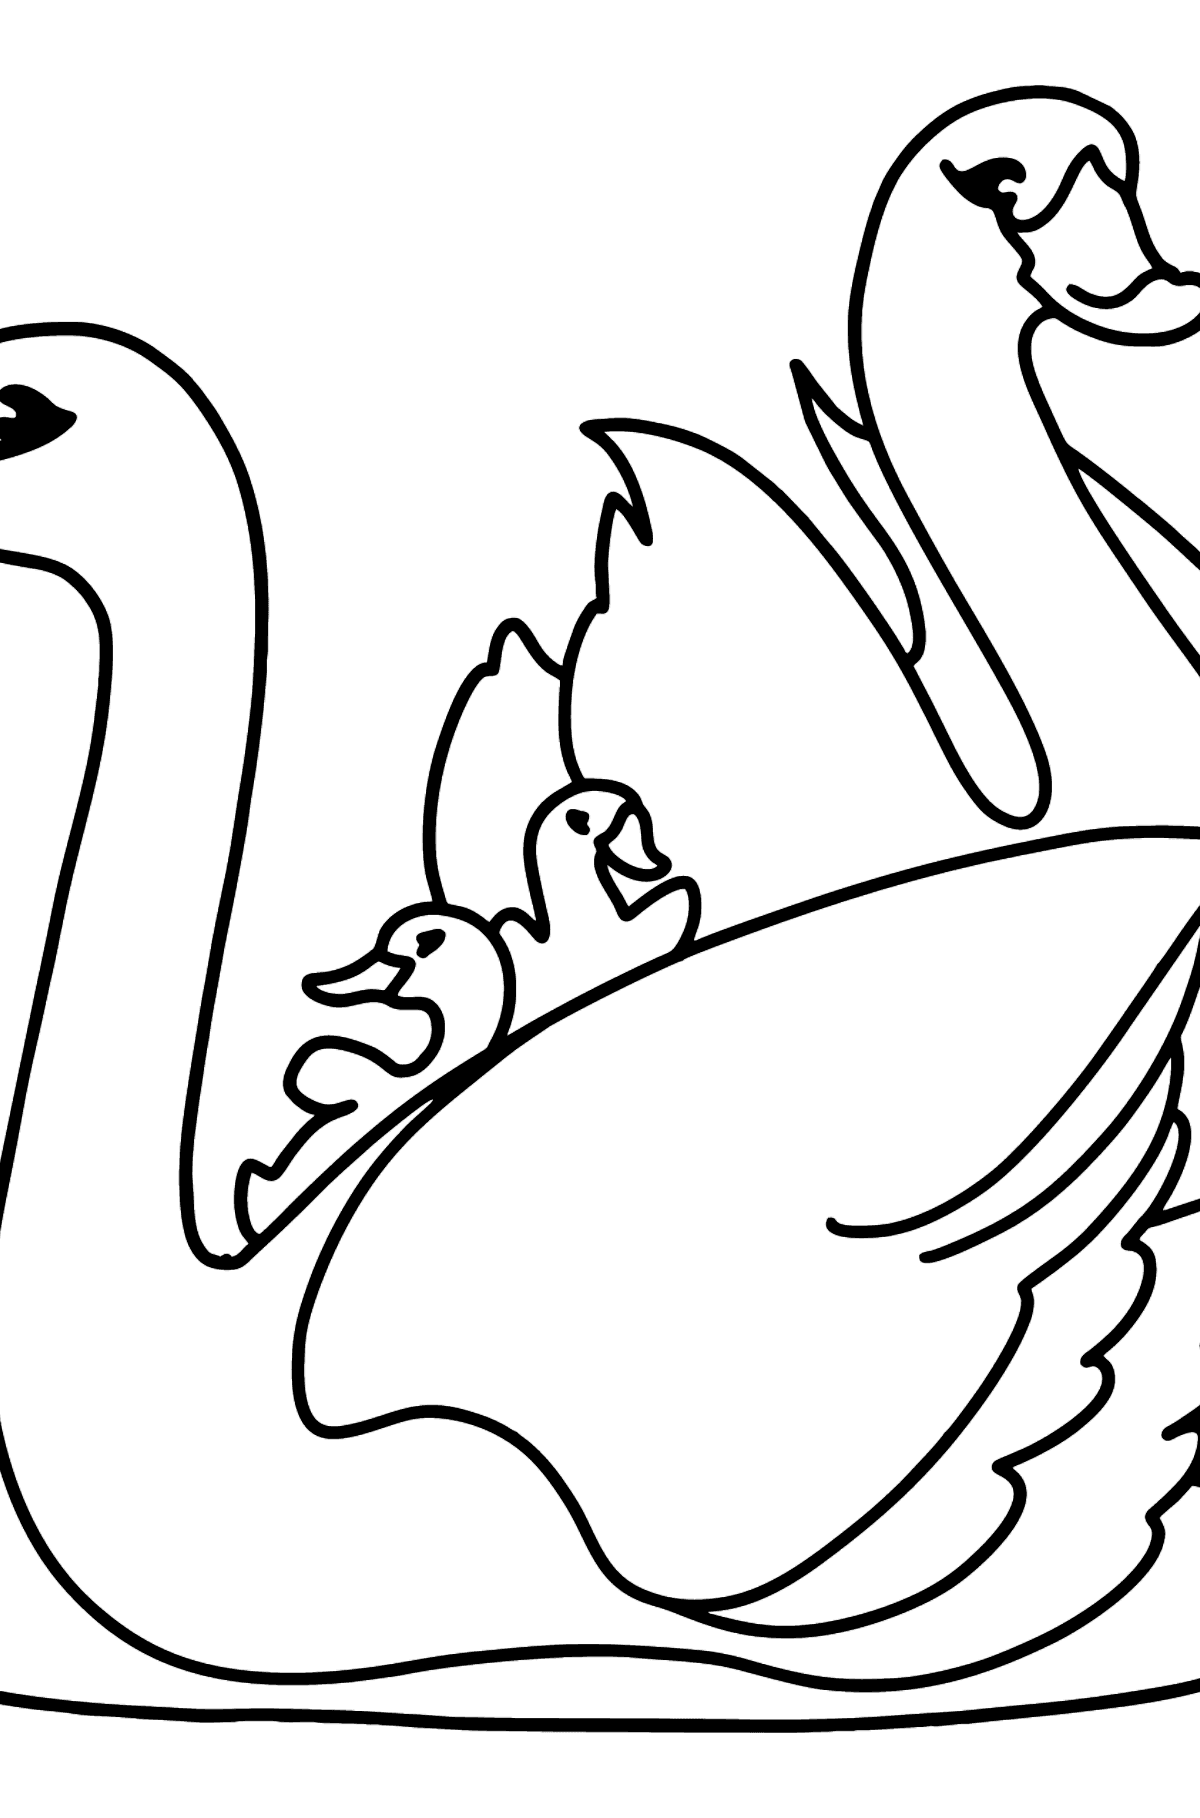 Dibujo de cisnes blancos para colorear - Dibujos para Colorear para Niños